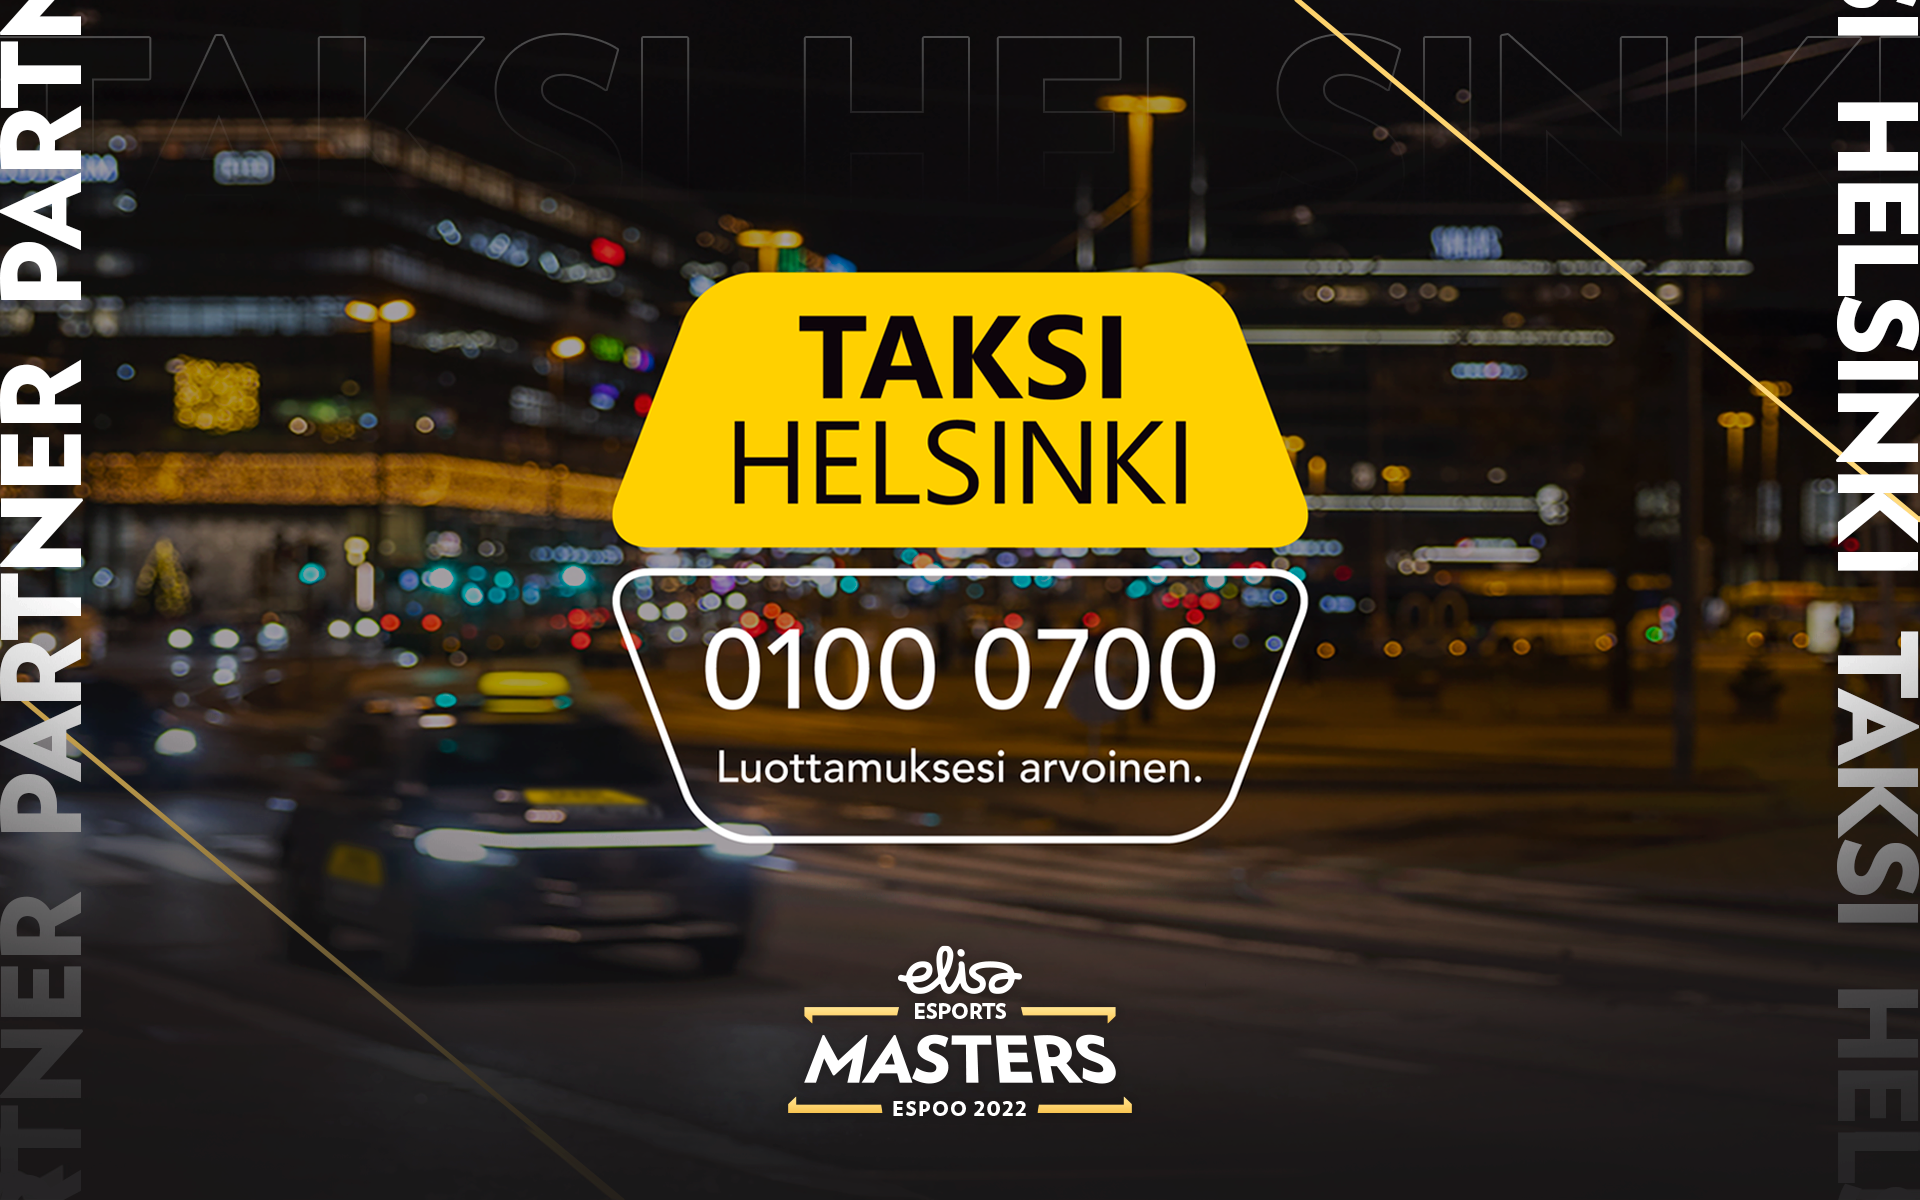 Taksi Helsinki Delivering Safe and Trustworthy Transport as Official Partner for Elisa Masters Espoo 2023